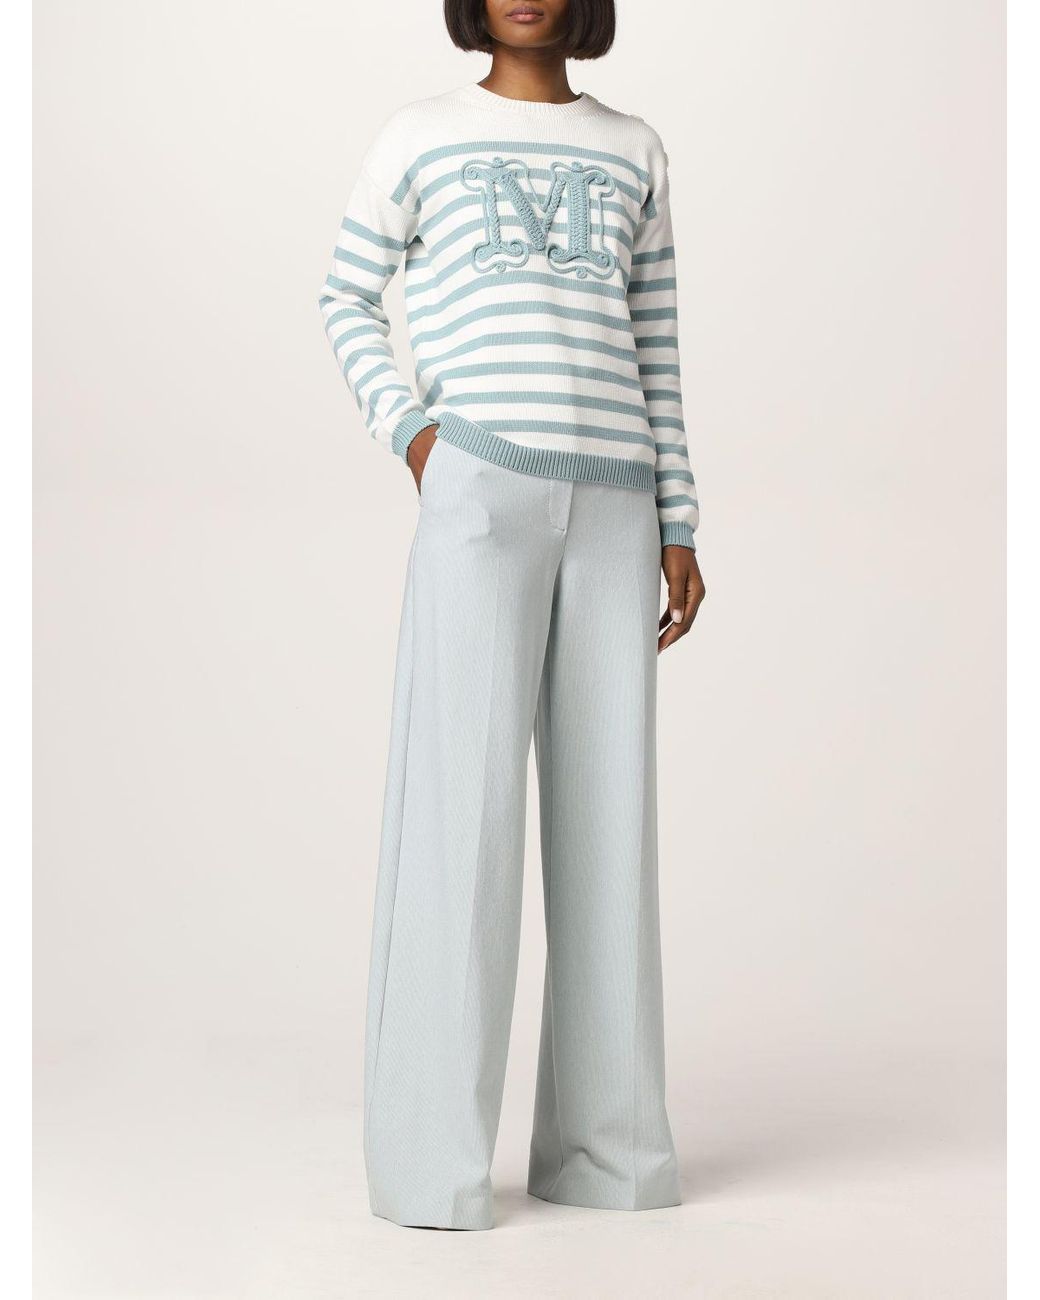 pantalones de vestir y chinos Pantalones de chándal Ronco de algodón de Max Mara de color Neutro Mujer Ropa de Pantalones 